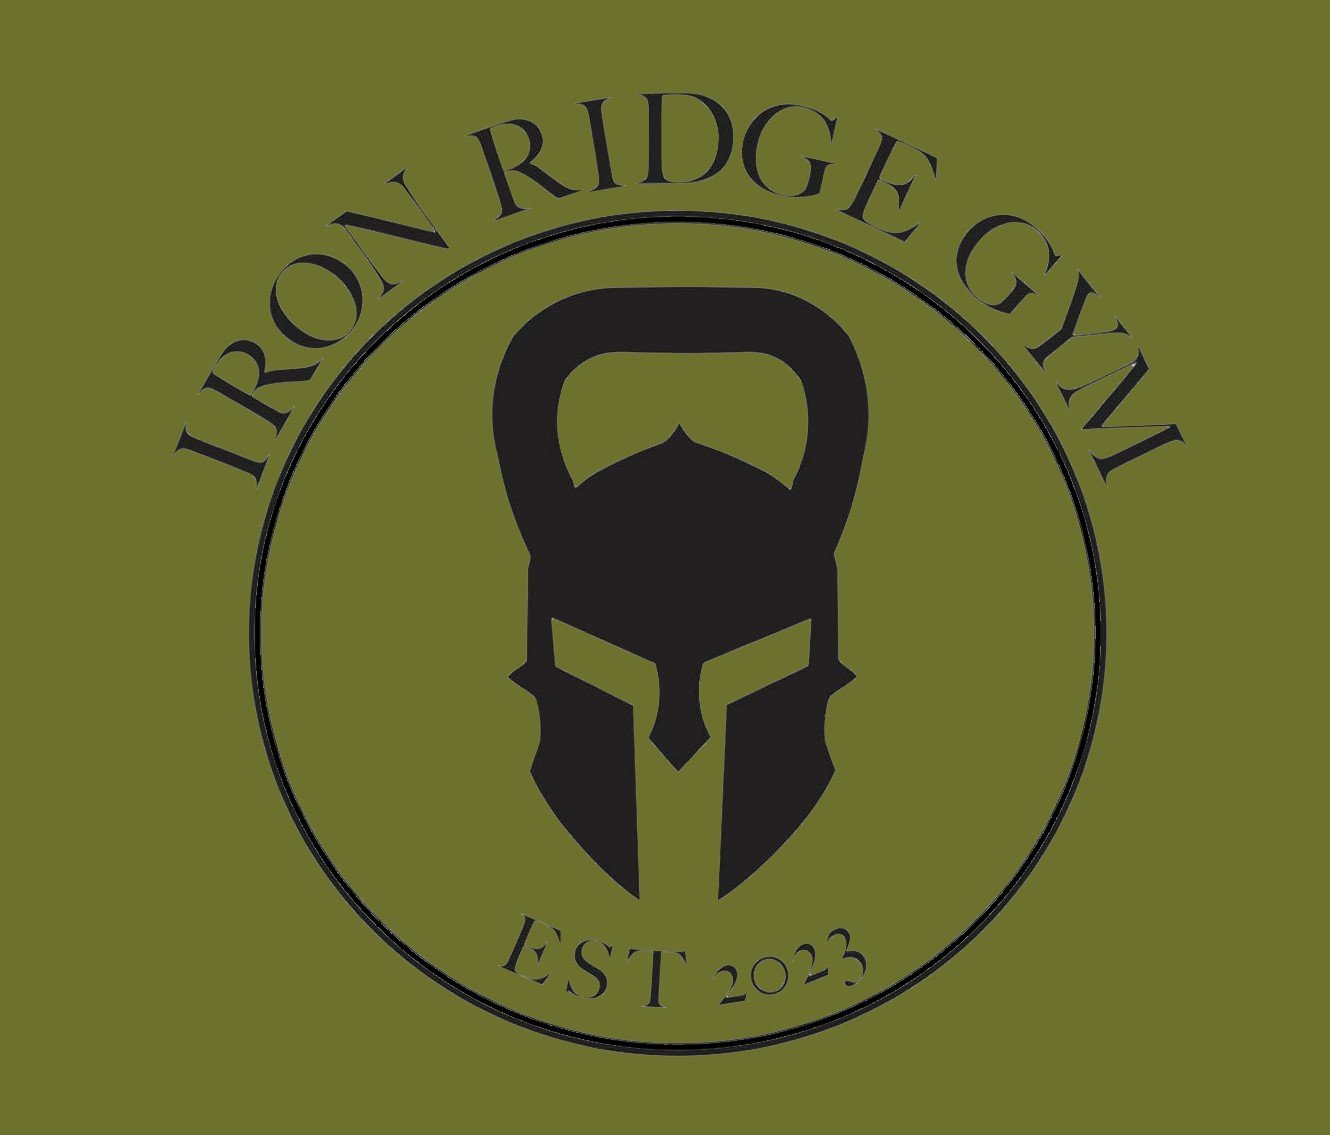 Iron Ridge Gym